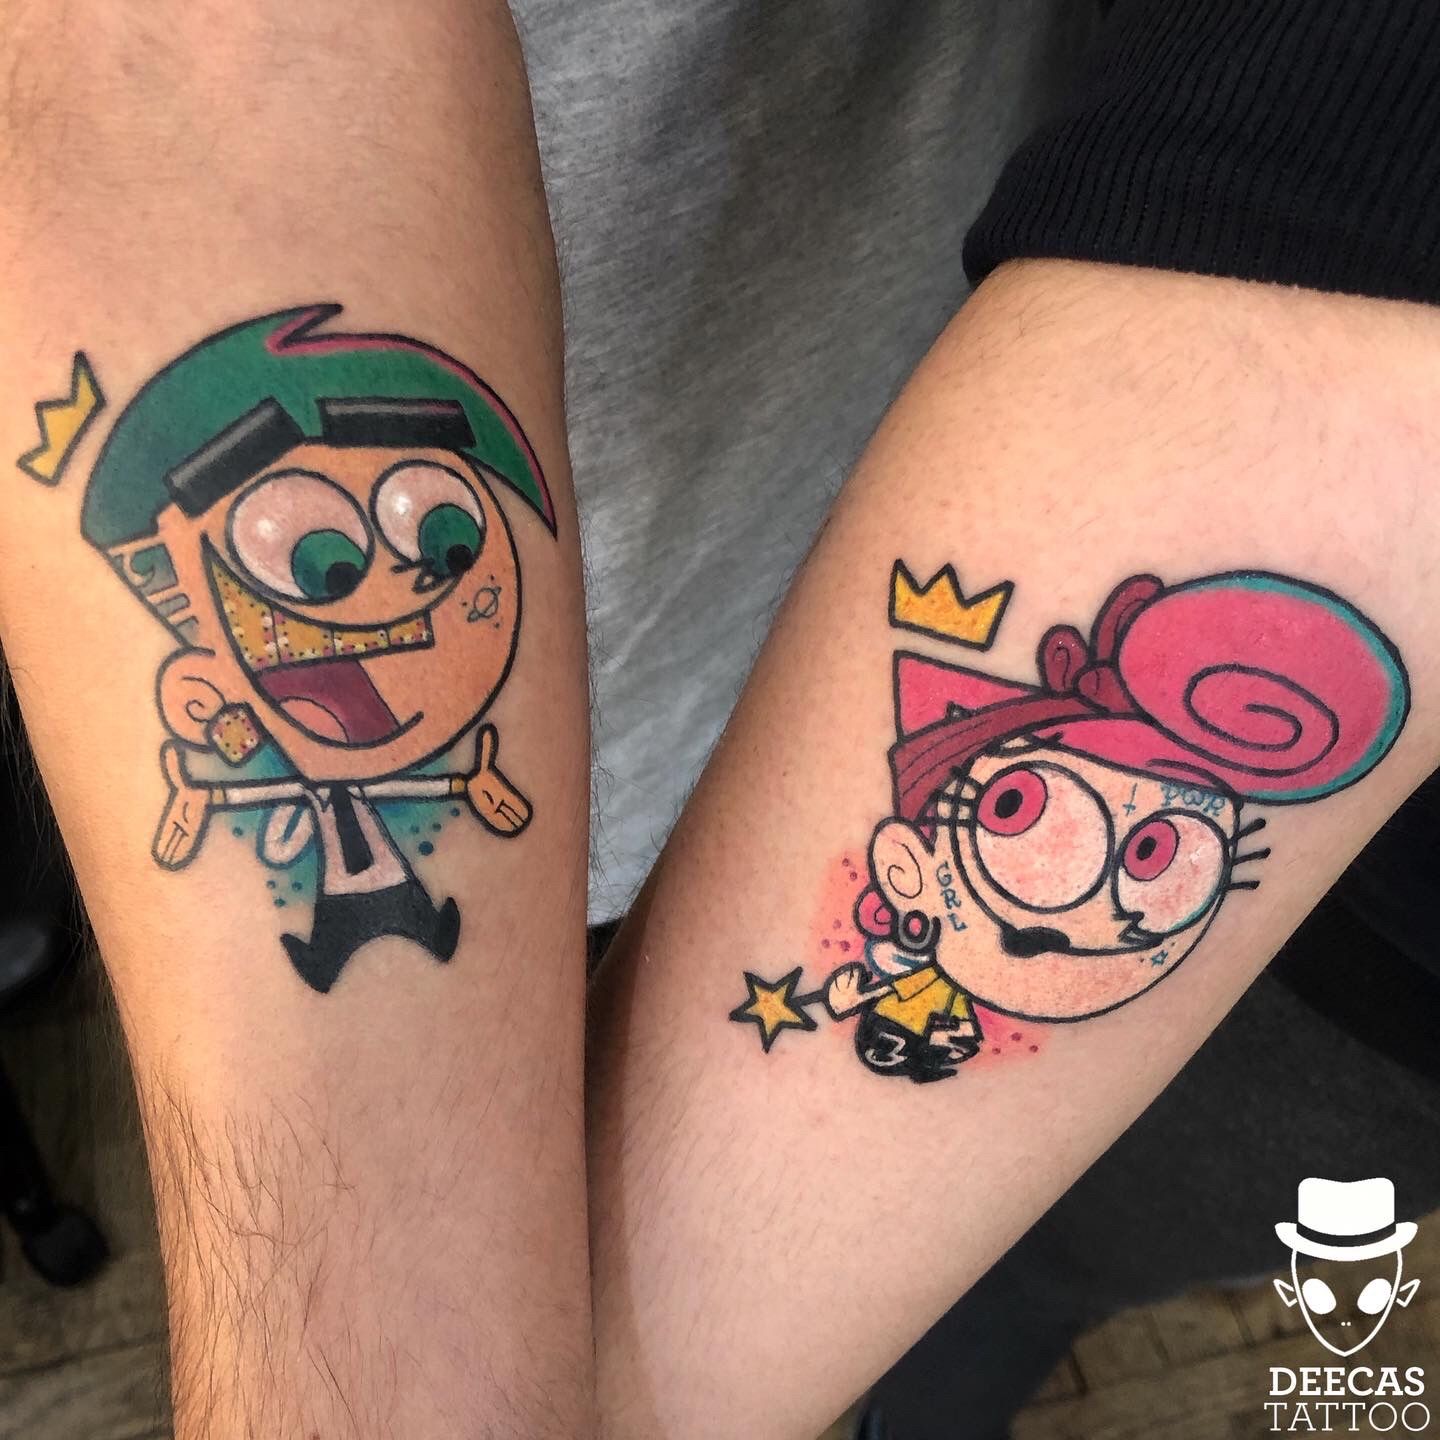 Cosmo and wanda tattoo